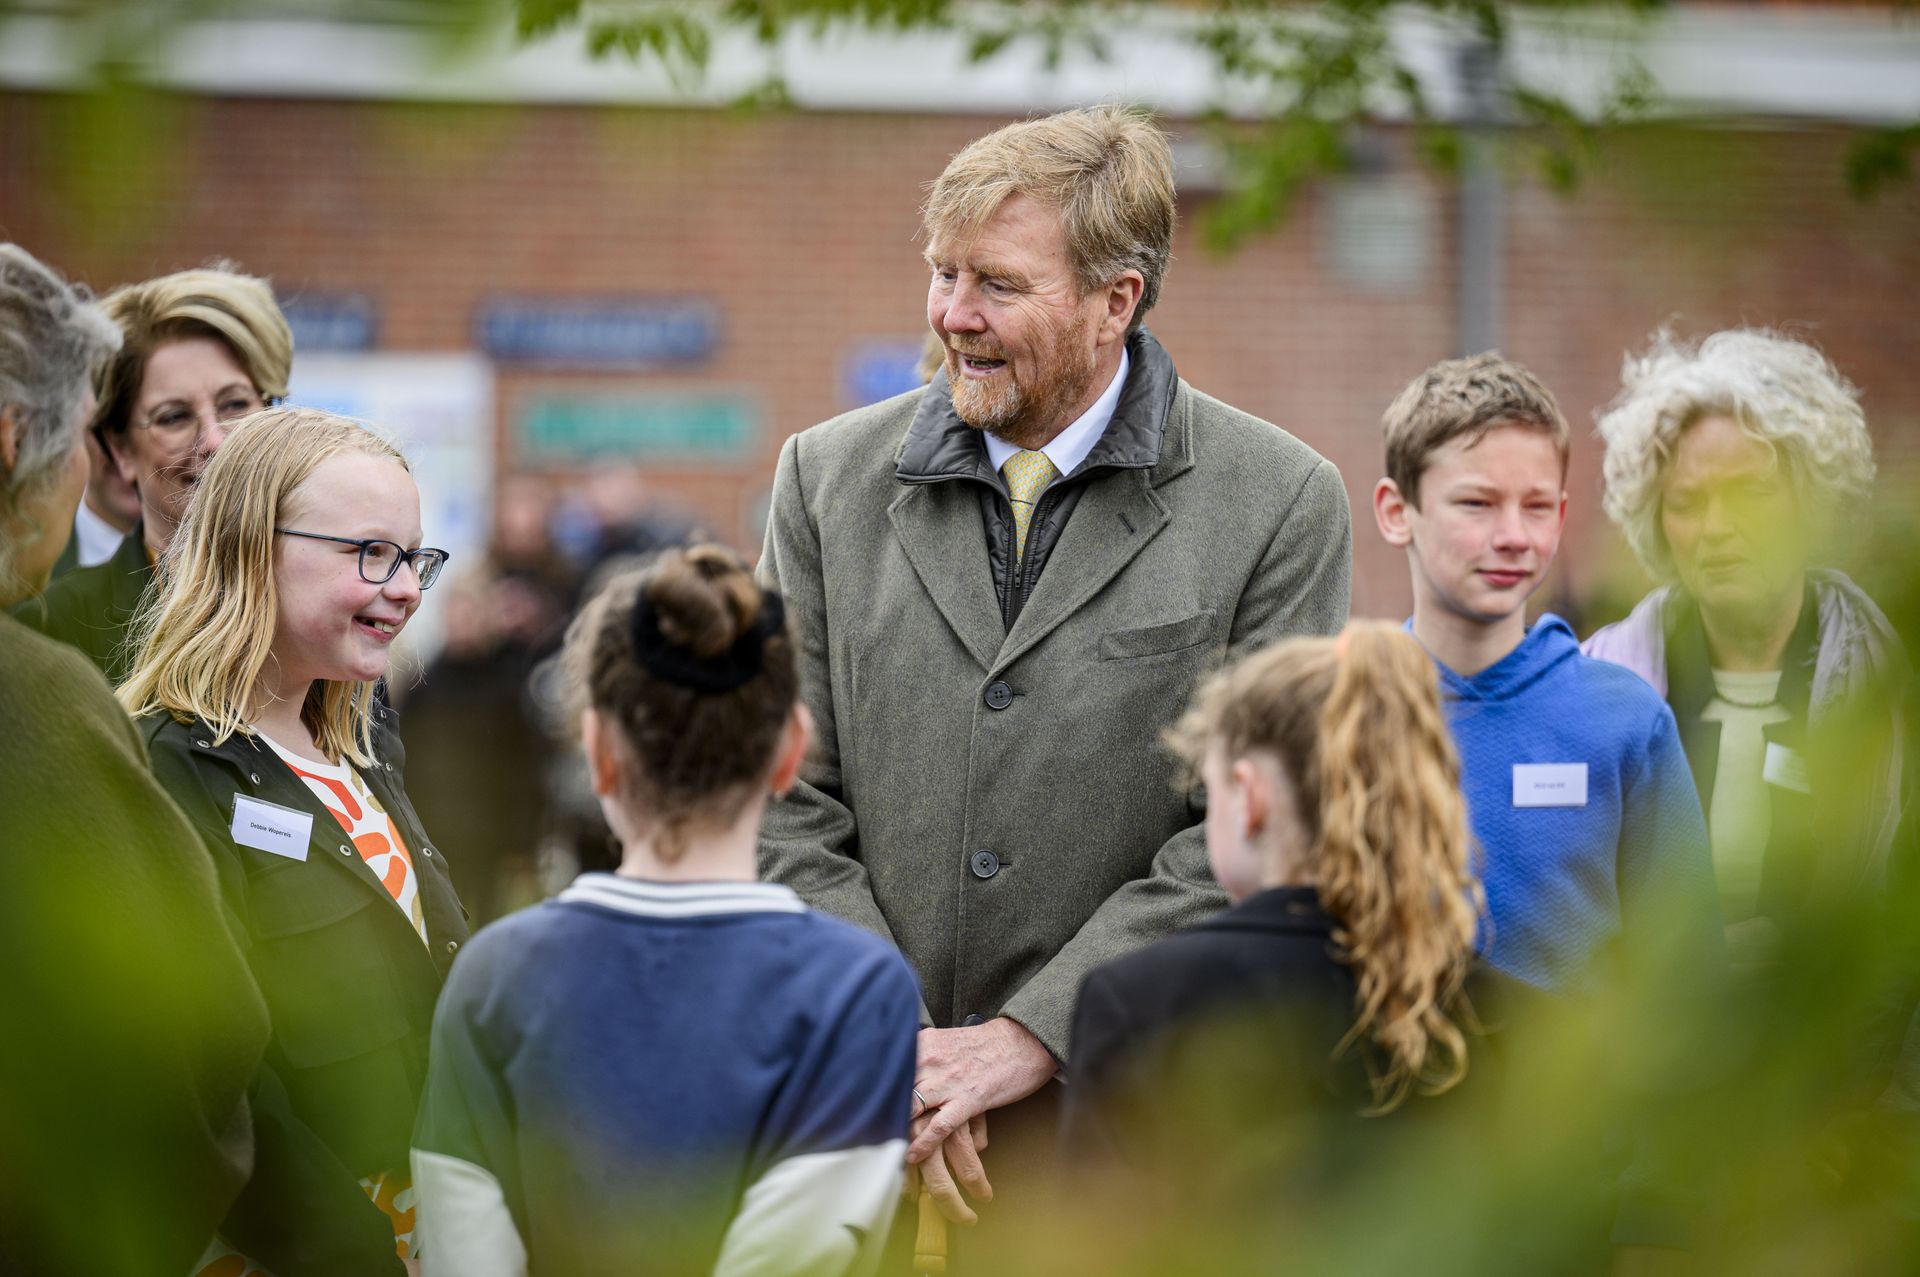 Op het schoolplein spreekt de koning met kinderen die hebben meegedacht over de vergroening van hun schoolplein.